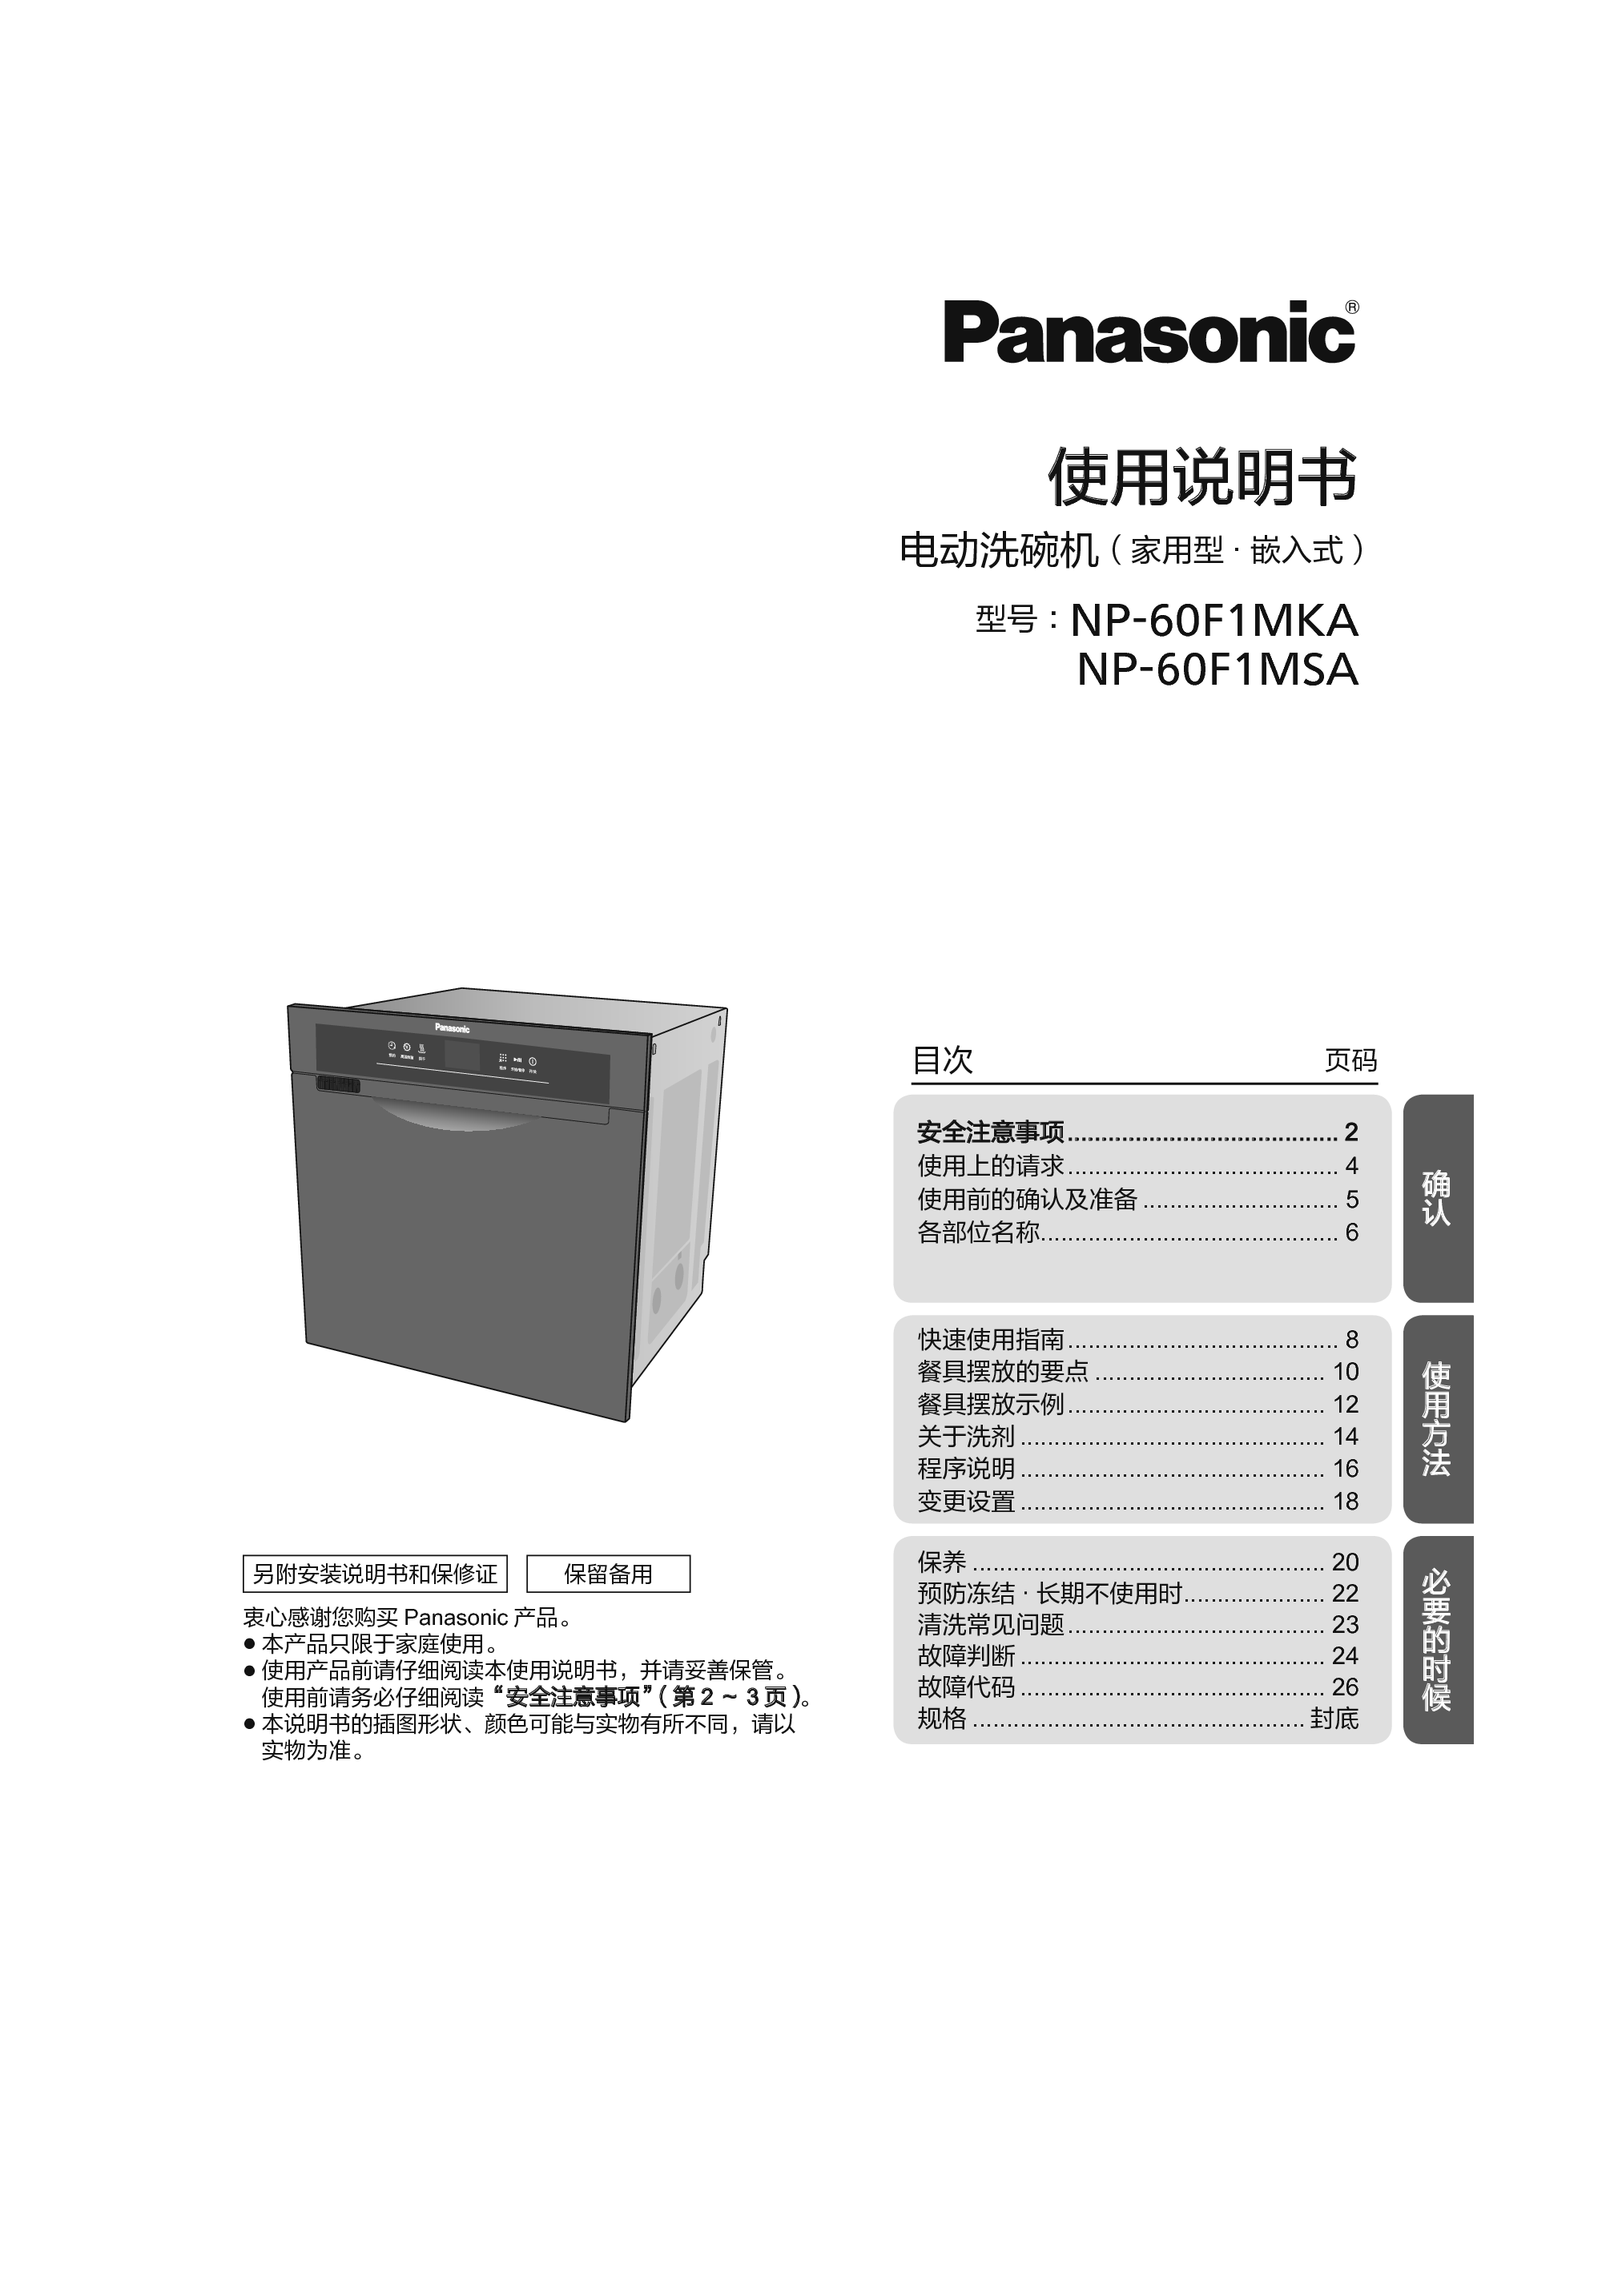 松下 Panasonic NP-60F1MKA 使用说明书 封面